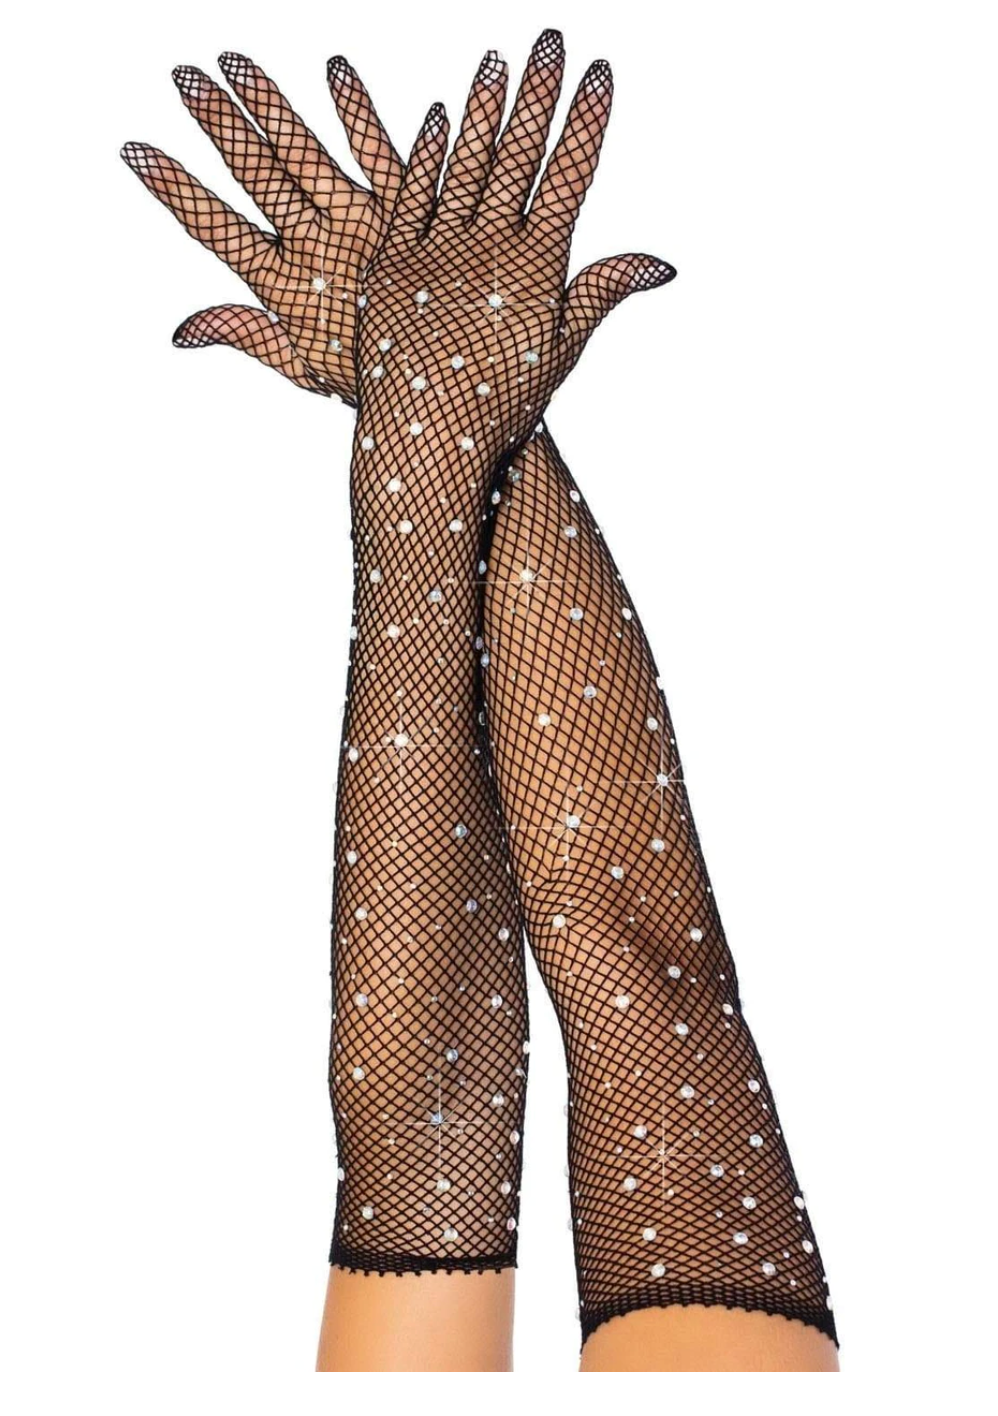 Rhinestone Fishnet Gloves